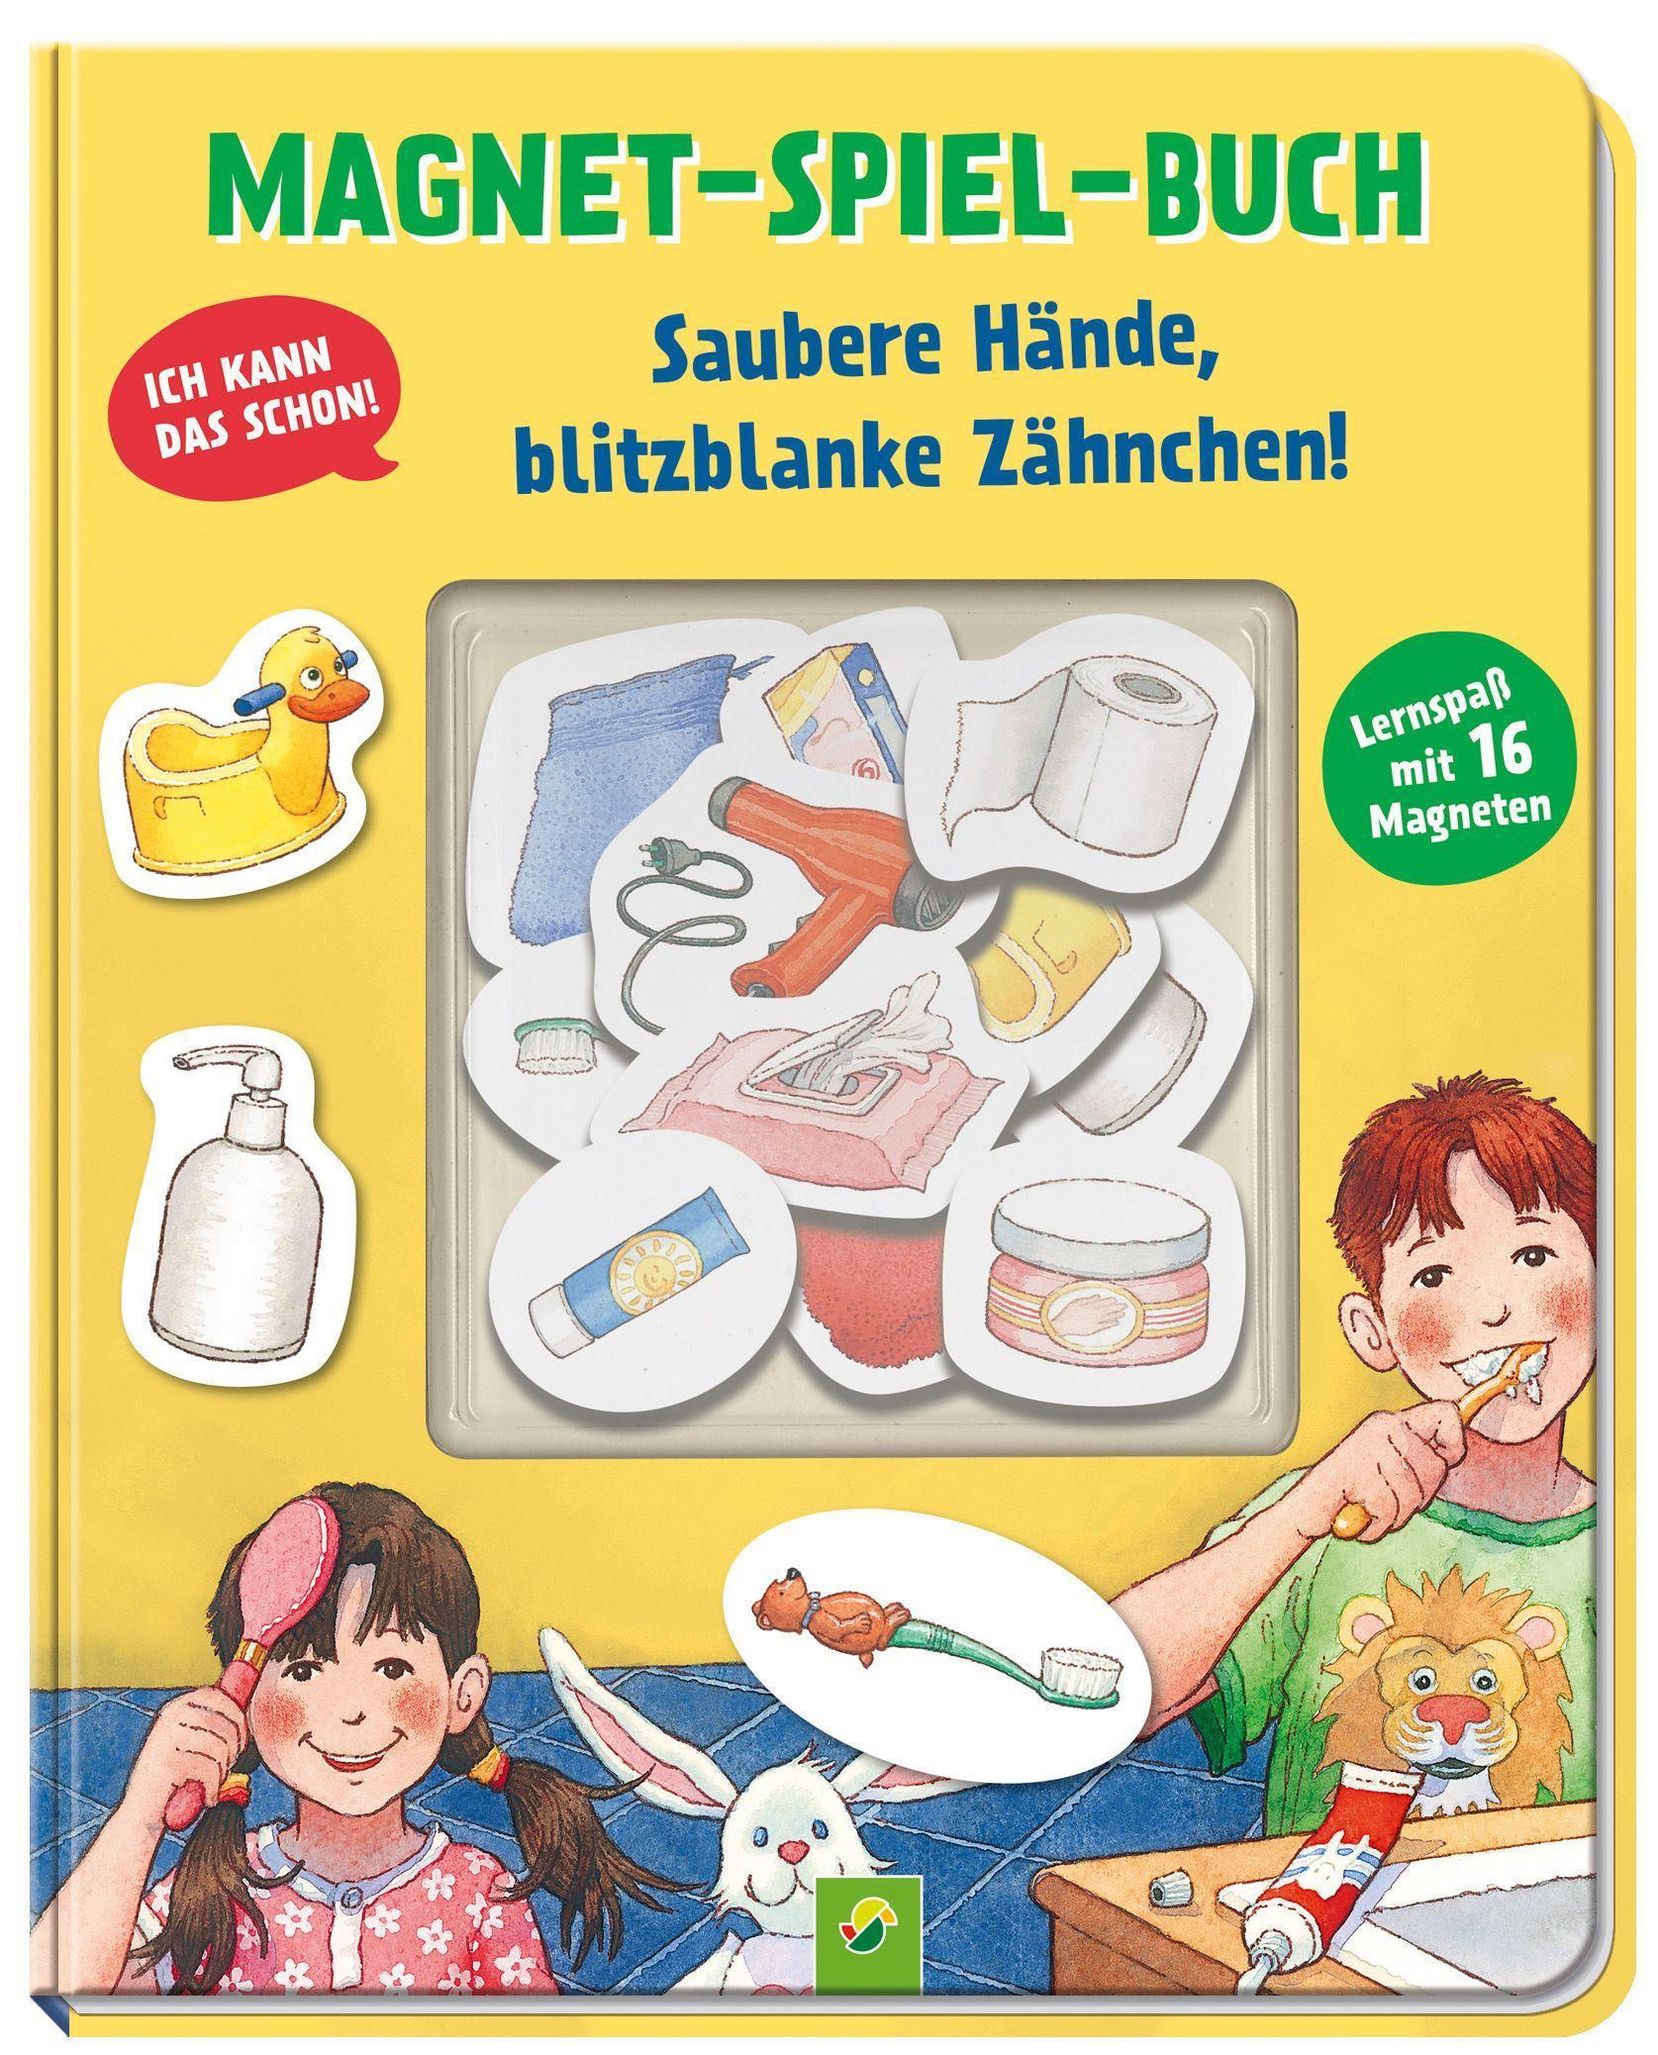 Magnet-Spiel-Buch Saubere Hände, blitzblanke Zähnchen! Buch  versandkostenfrei bei Weltbild.de bestellen